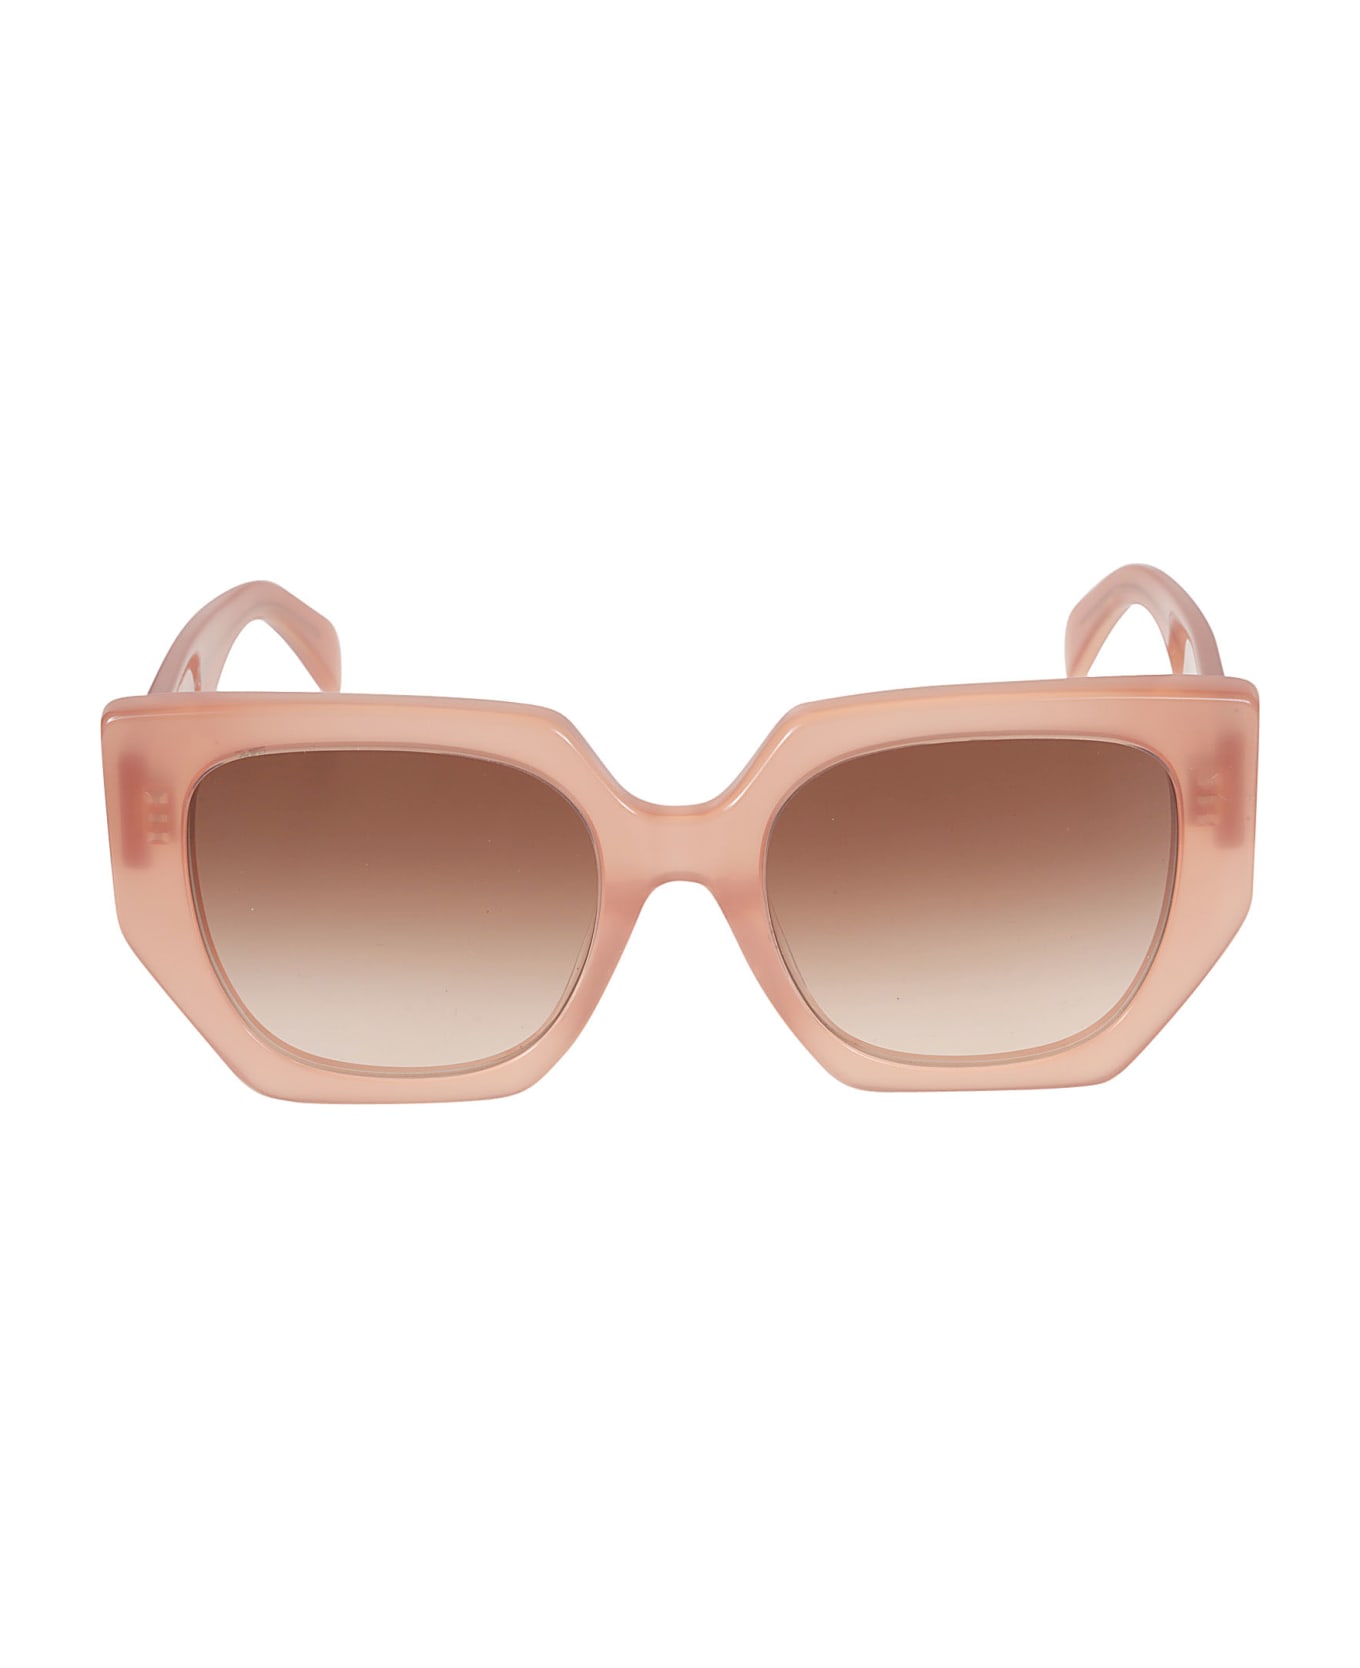 Celine Wayfarer 6 Side Sunglasses Cleitus - Light pink